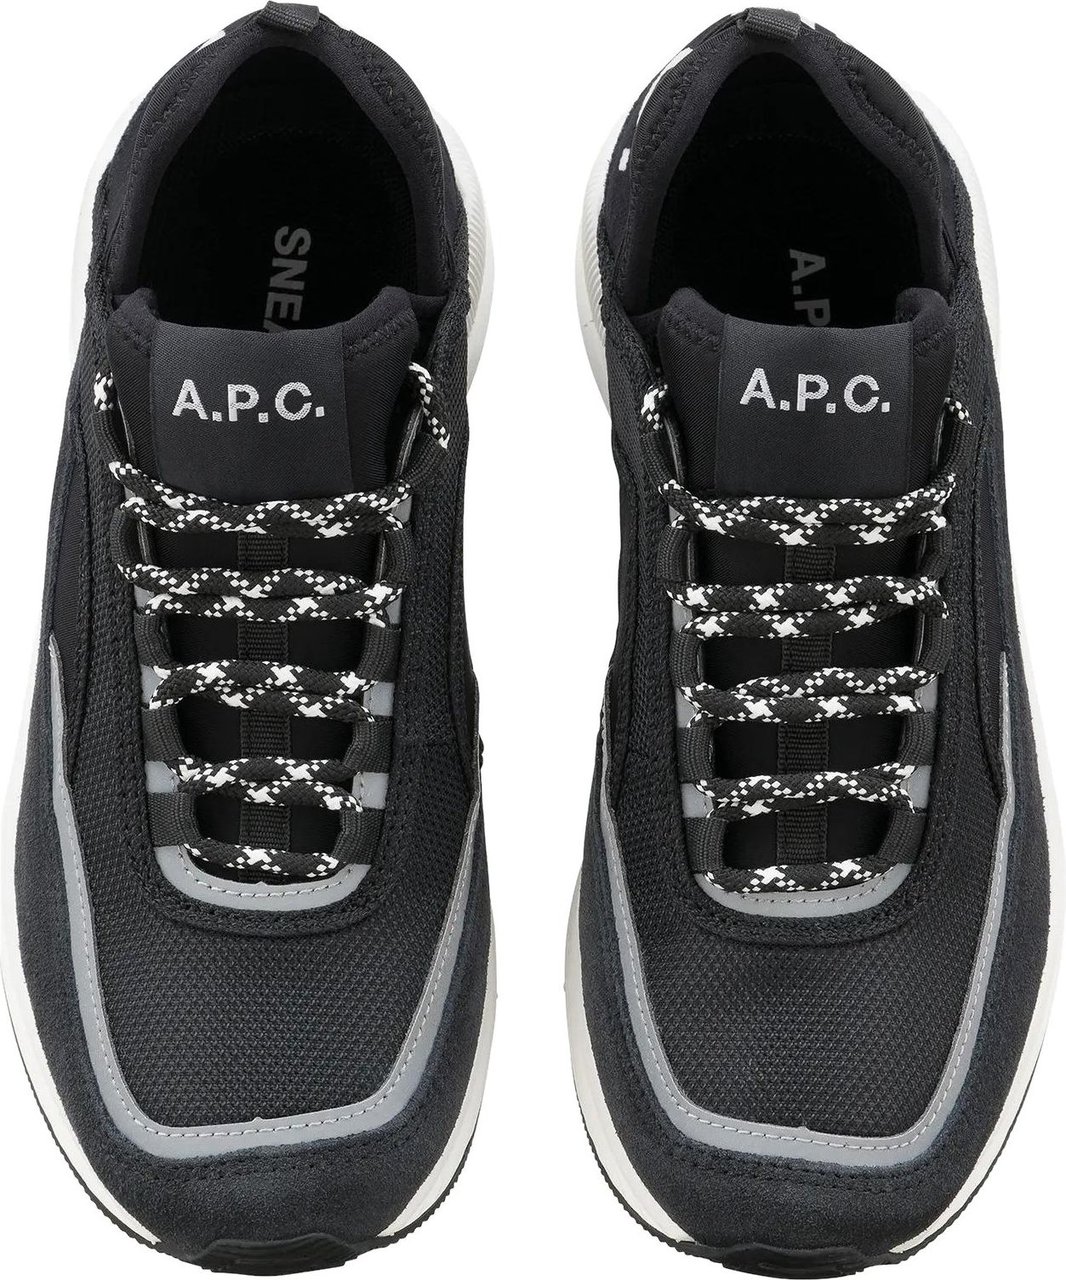 A.P.C. A.P.C. Shoes Black Zwart